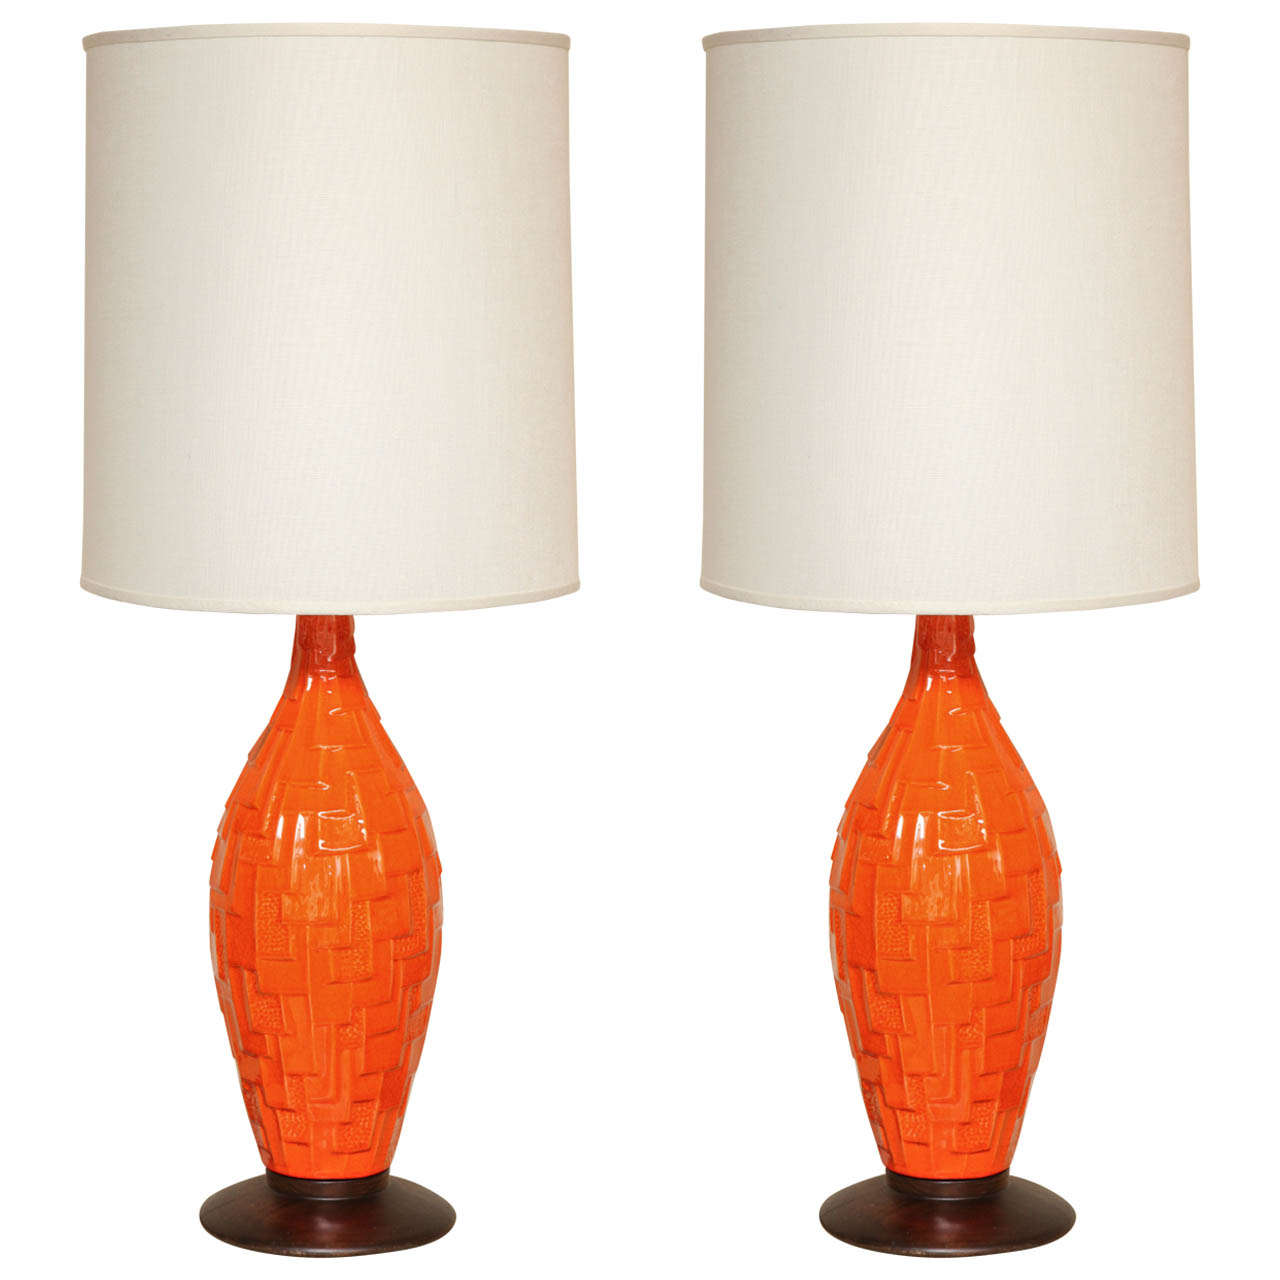 Pair of Orange Ceramic Lamps with Geometric Design, circa 1960